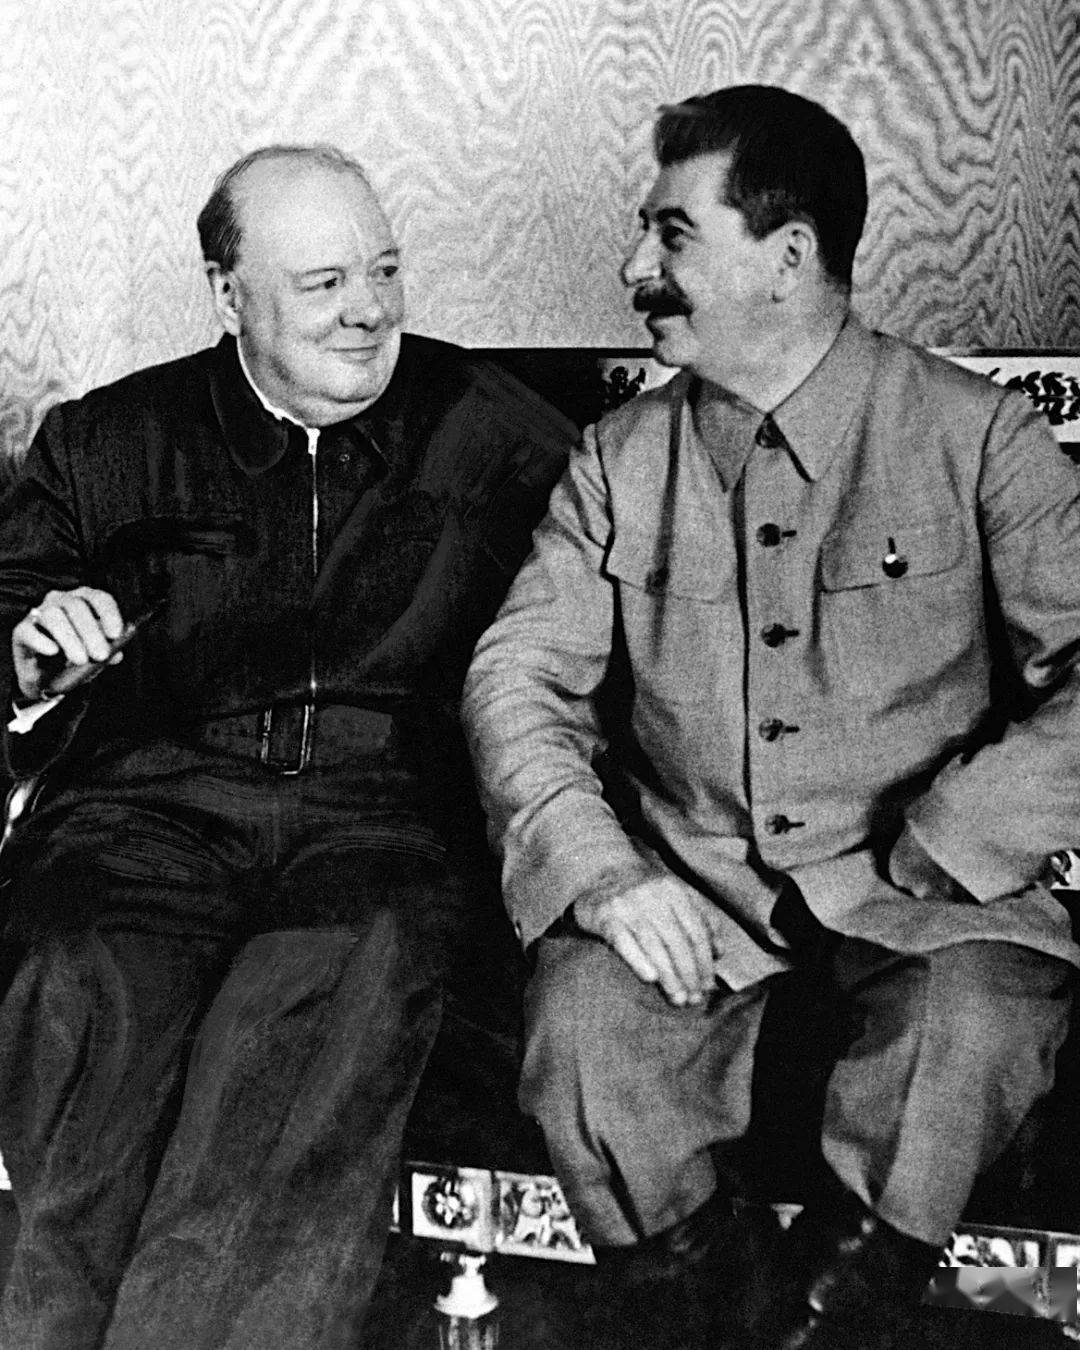 1942年8月,丘吉尔访问苏联,在与斯大林的会面中,斯大林特意提起了那